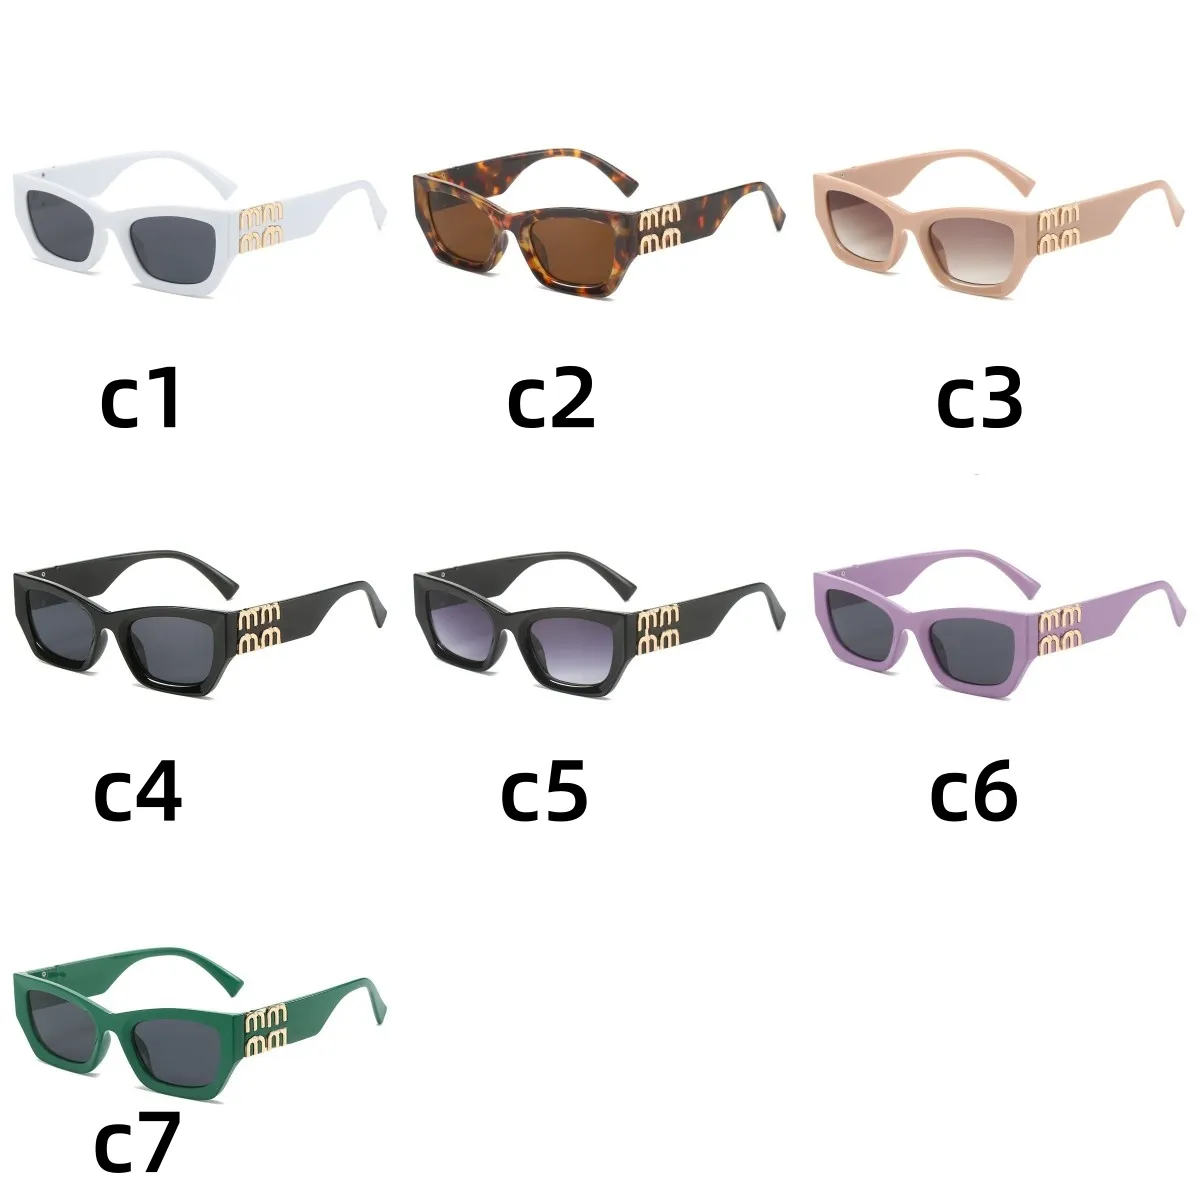 Grossist mu1 mu1 mens solglasögon män solglasögon designer solglasögon för kvinnor sommarskörglasögon toppkvalitet heet klassisk lyx retro solglasögon moq = 10